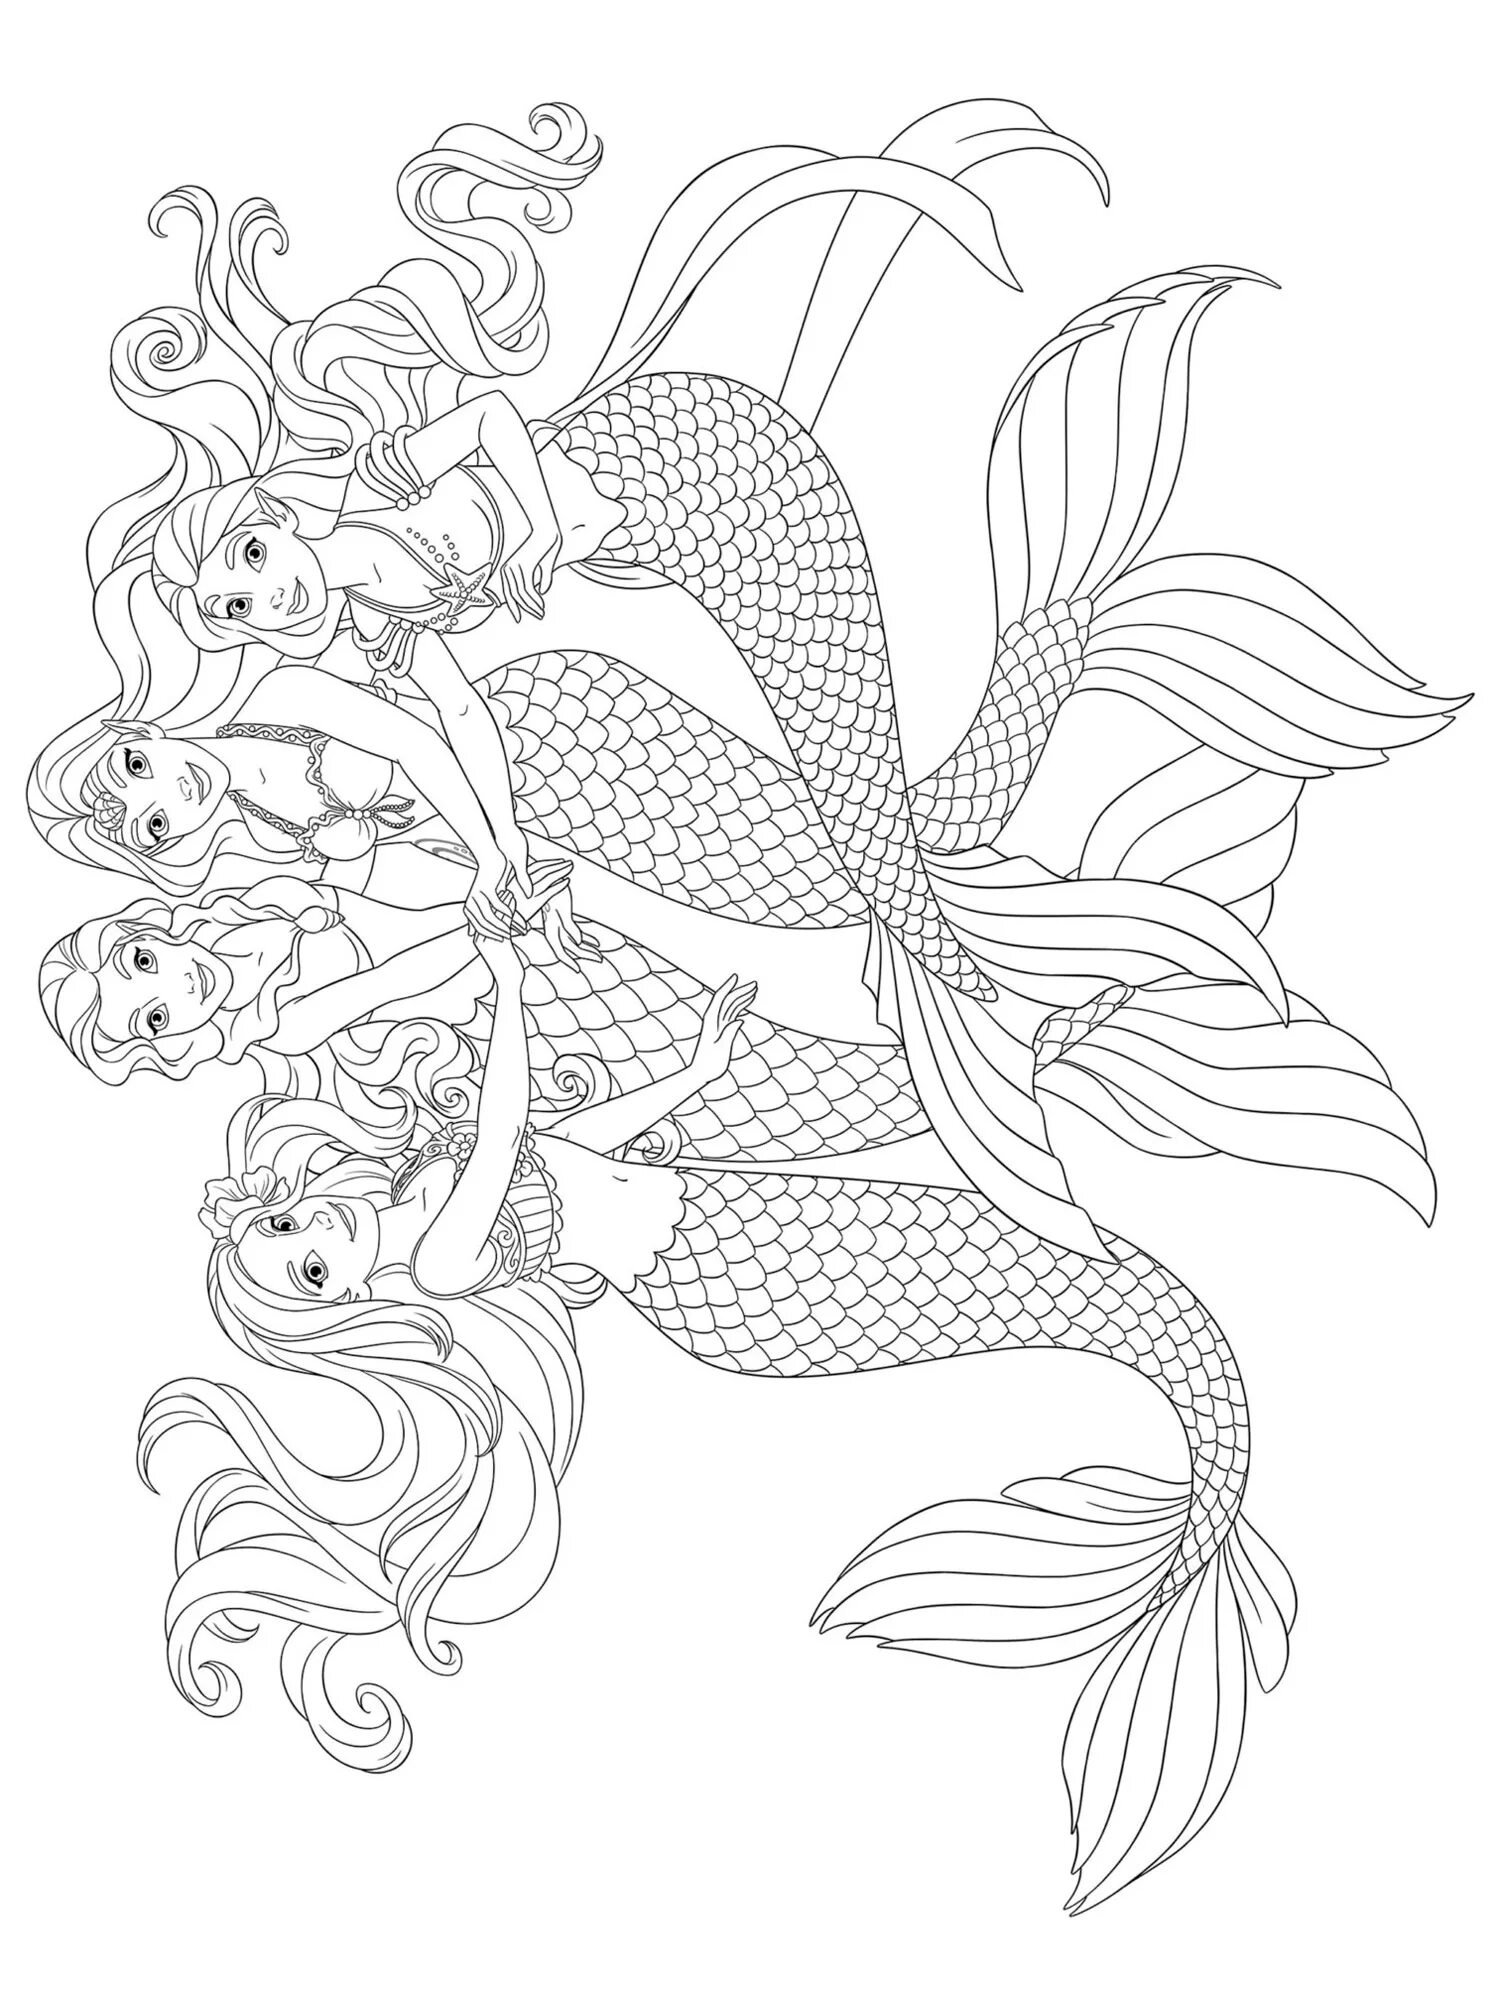 Coloring fairy queen of mermaids